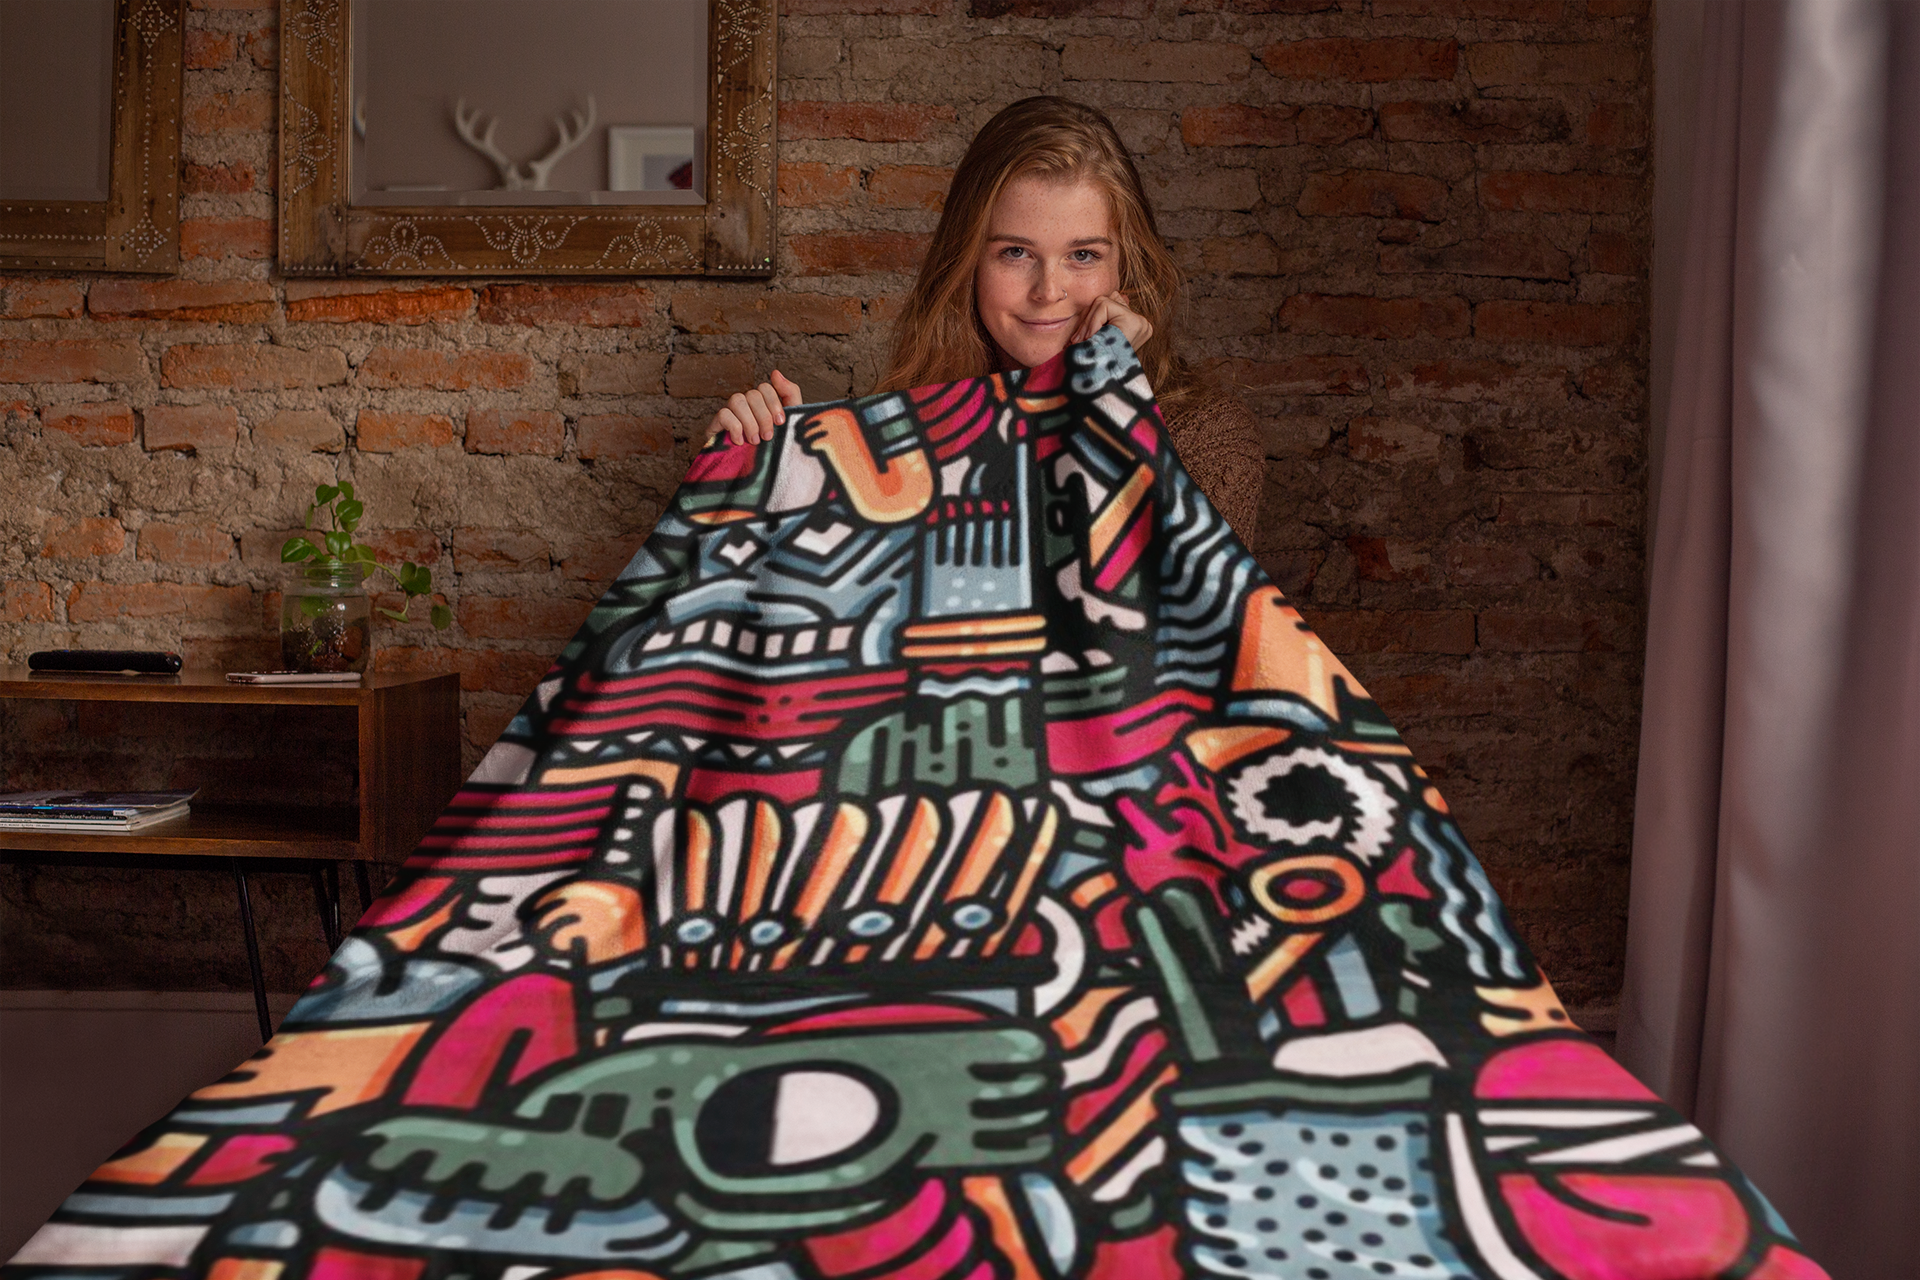 Aztec Themed Velveteen Soft Blanket